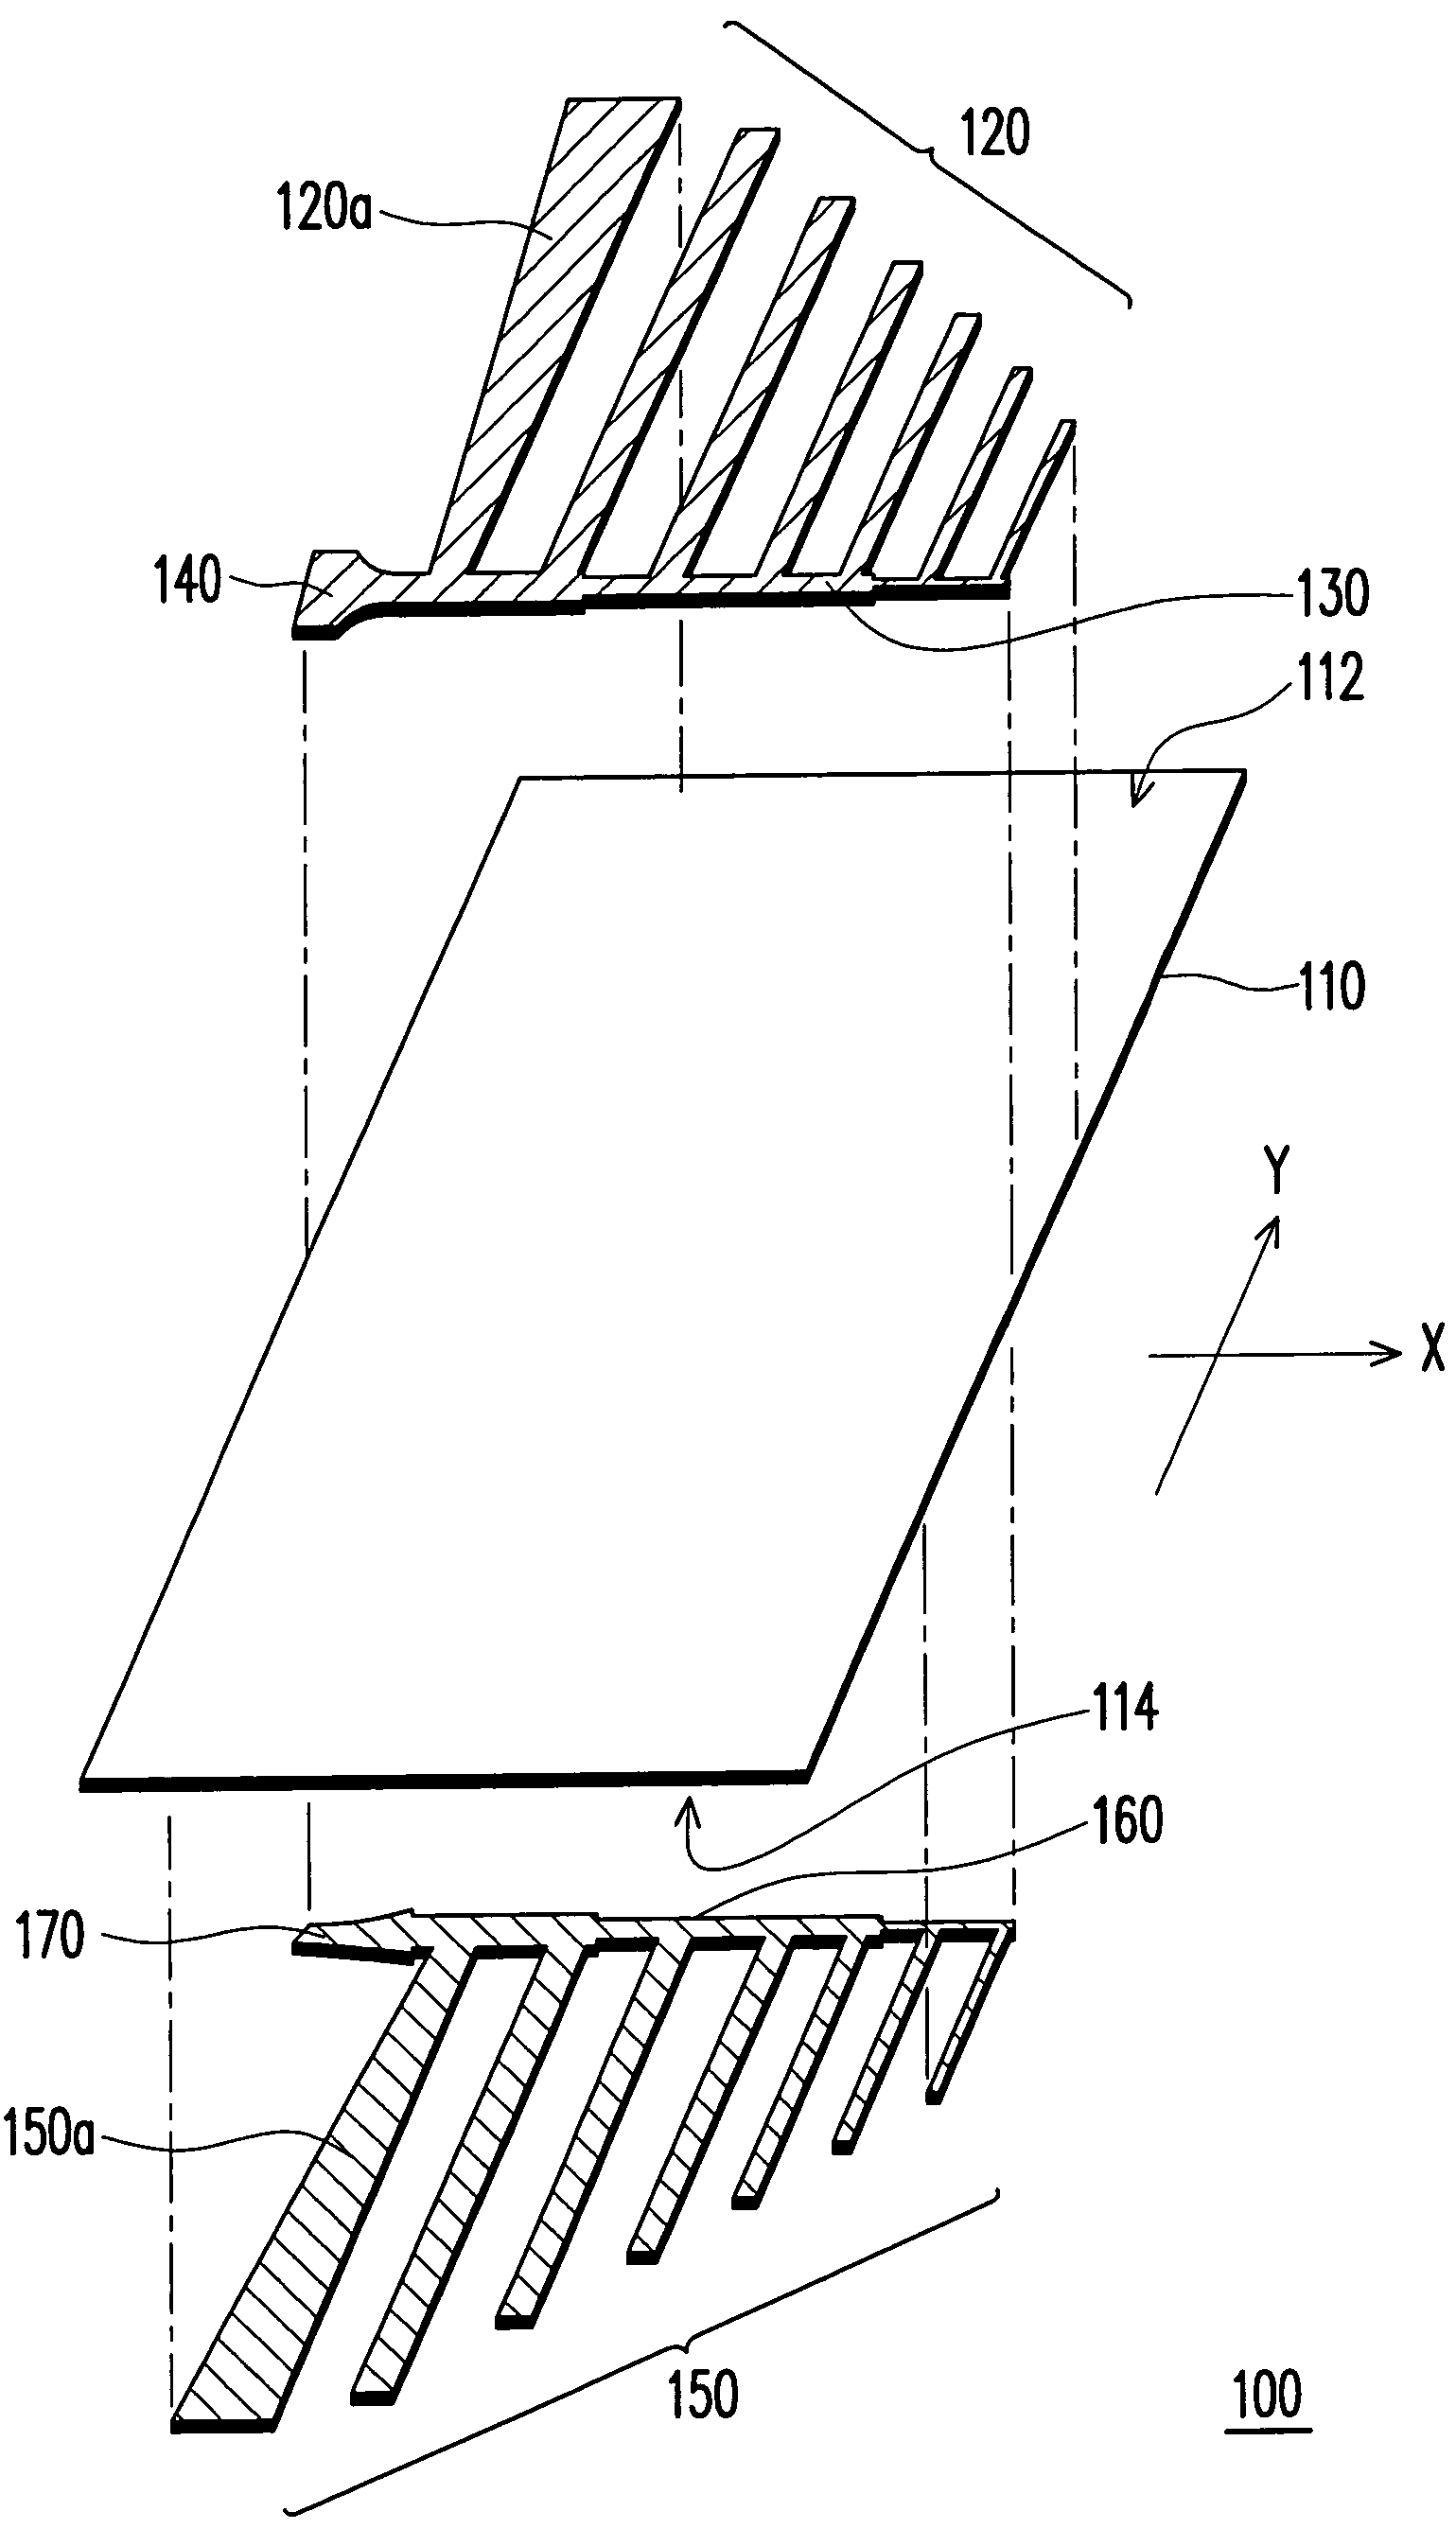 Log-periodic dipole array antenna